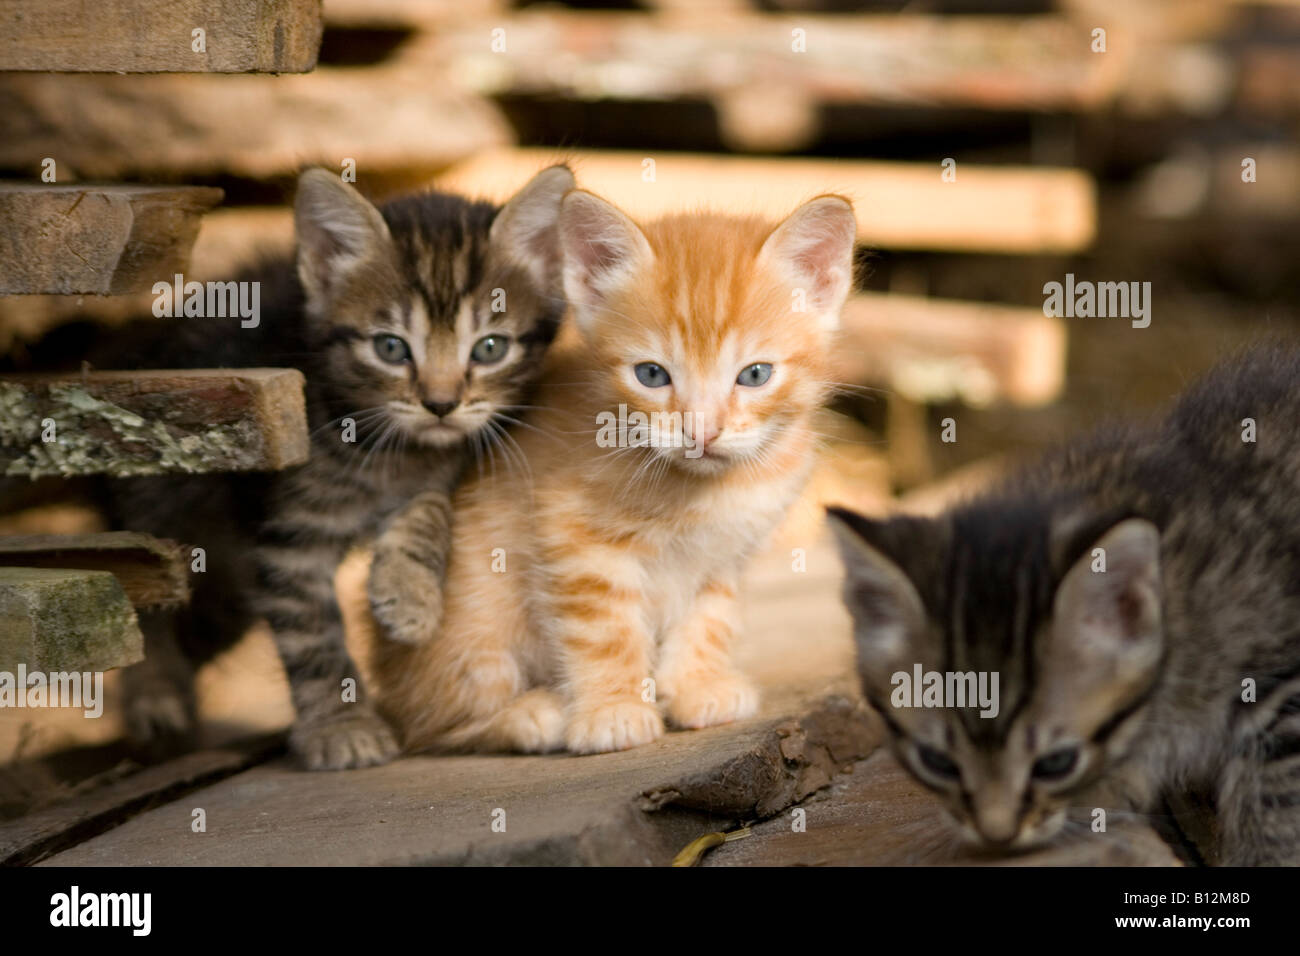 three baby cat Stock Photo